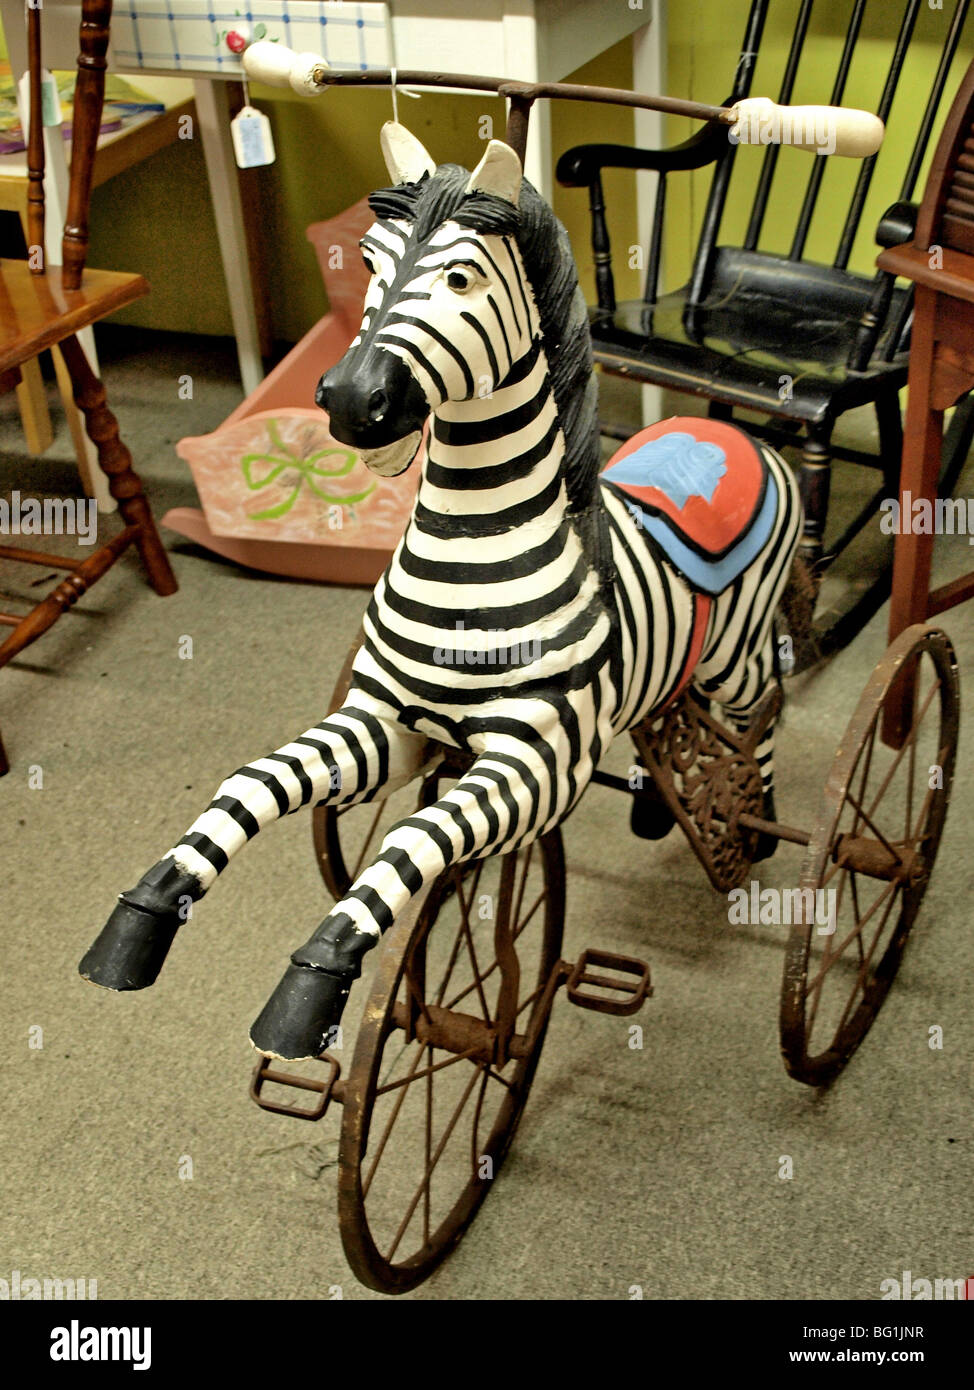 Enfants Enfant Enfant vélo tricycle sculpté zebra trois roues siège rouge Banque D'Images